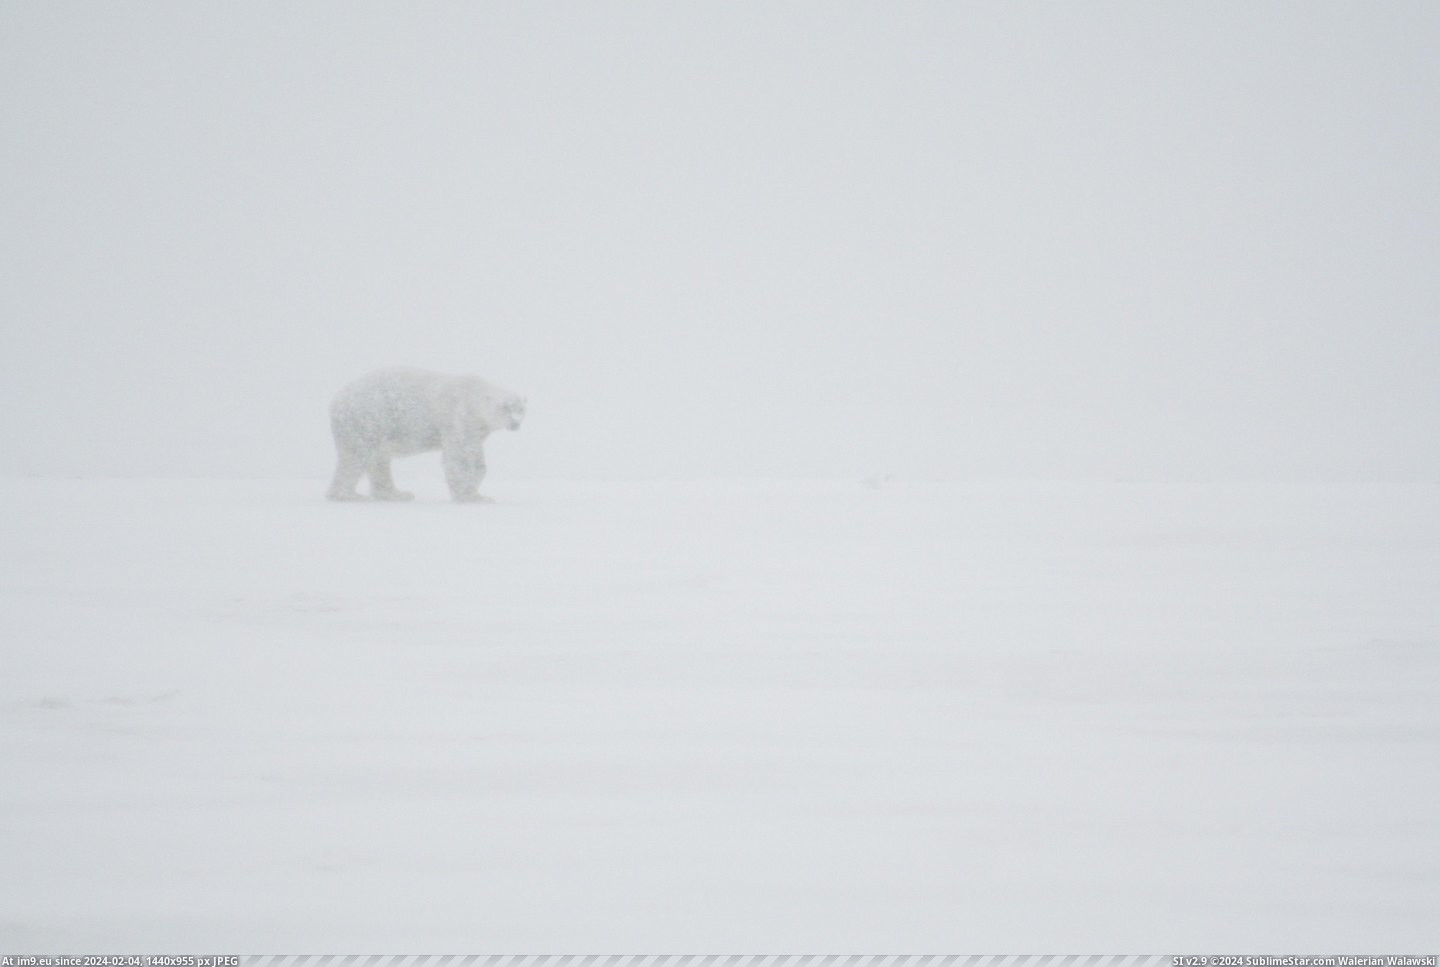 #Alaska #Bear #Snowstorm #Polar #Actual [Pics] An actual polar bear in an actual snowstorm. Took this in Alaska. Pic. (Bild von album My r/PICS favs))